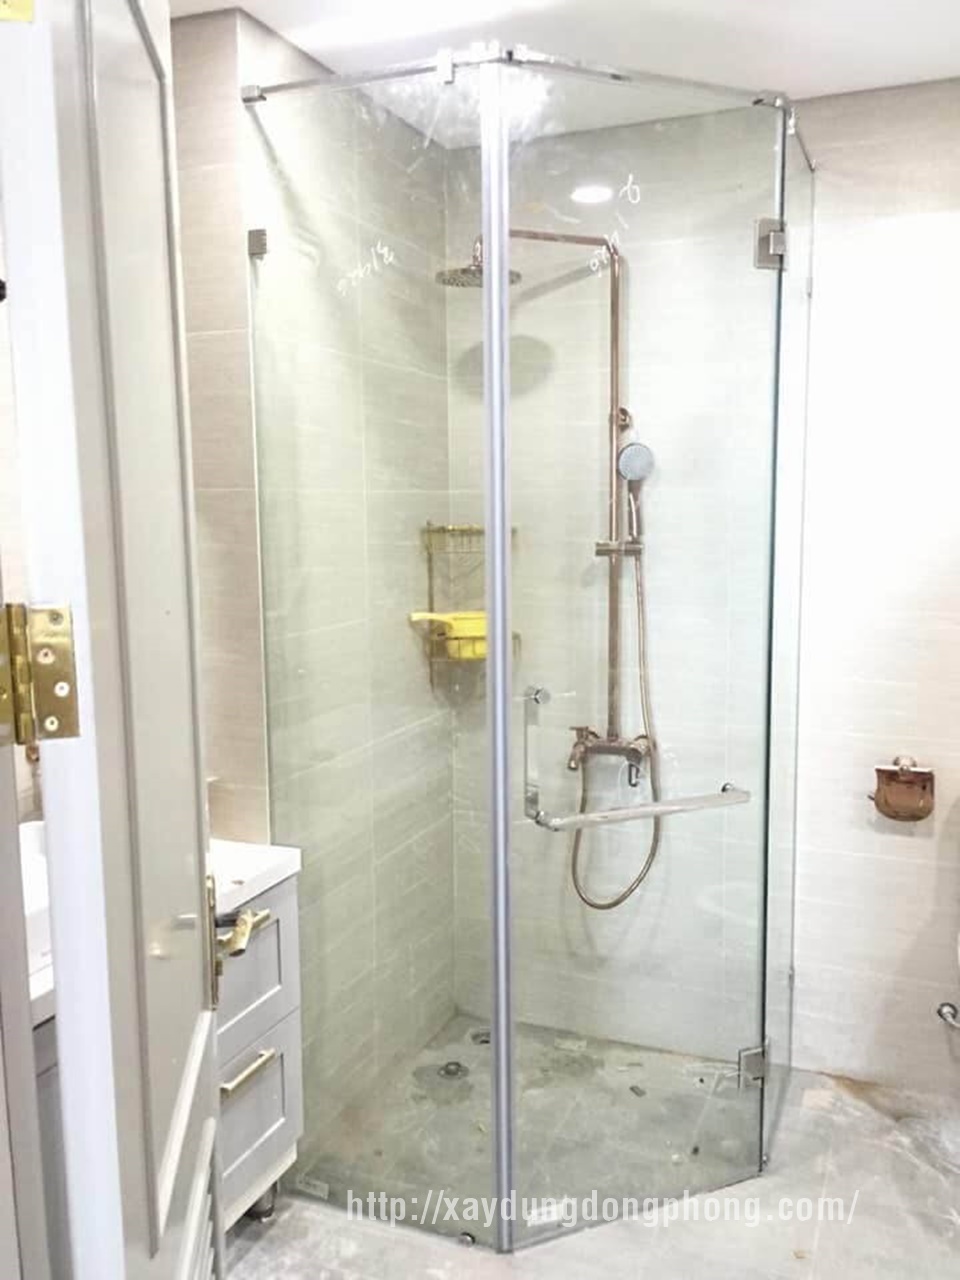 Phòng tắm kính 135 độ và những ưu điểm khách hàng cần biết